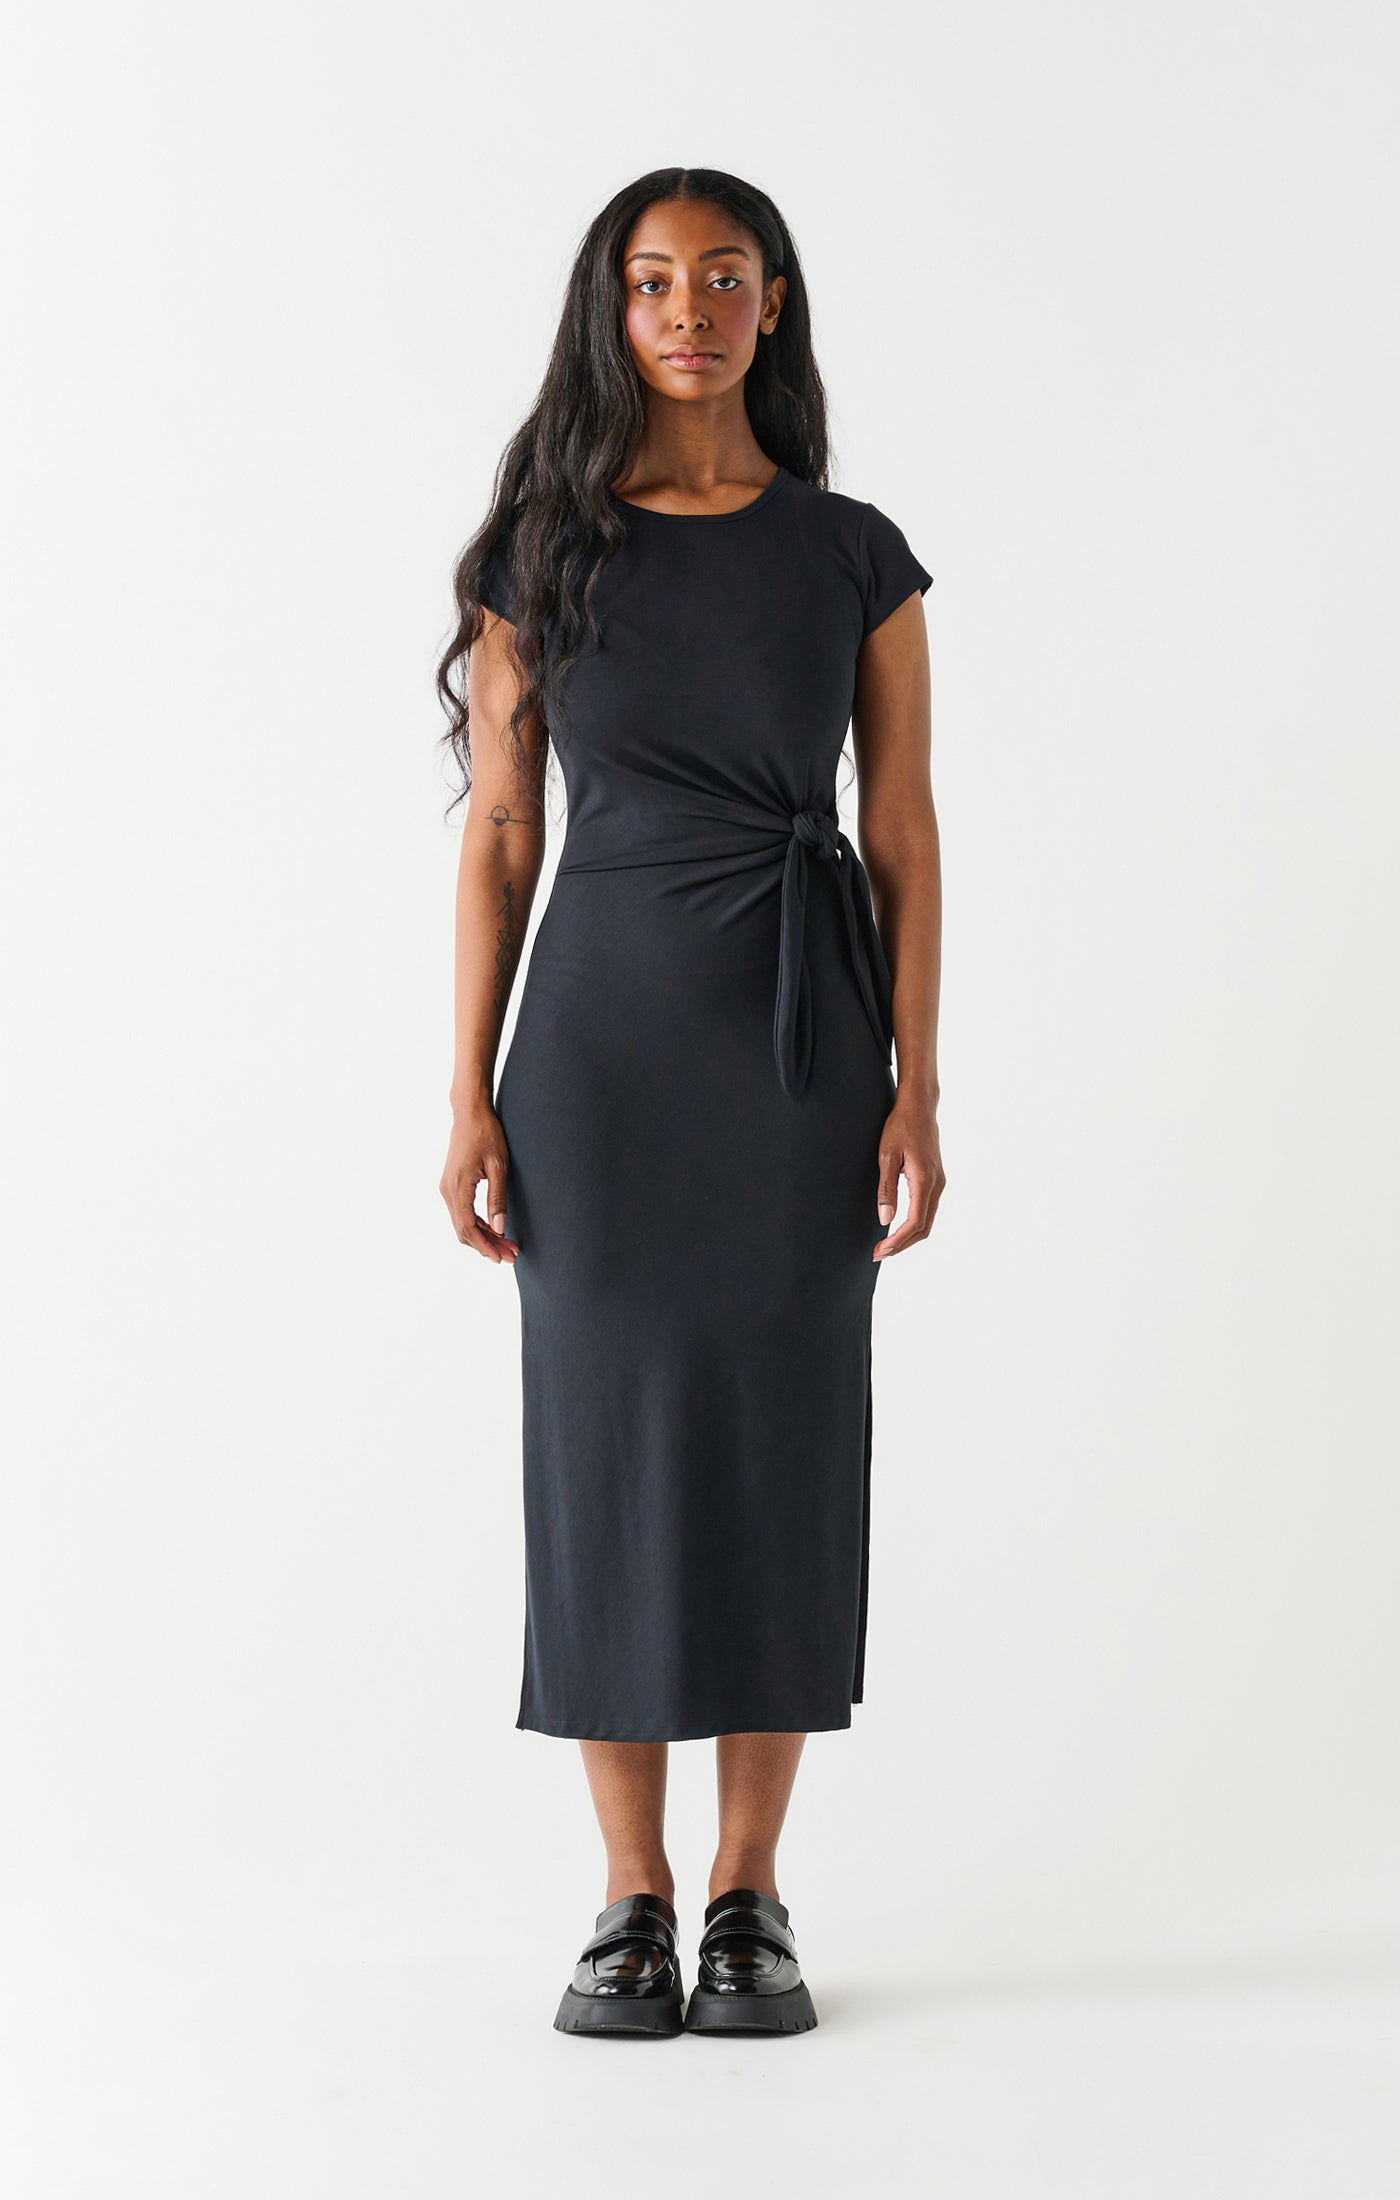 Lot of 05 women wholesale boutique clothing Dresses - Mix designs | eBay